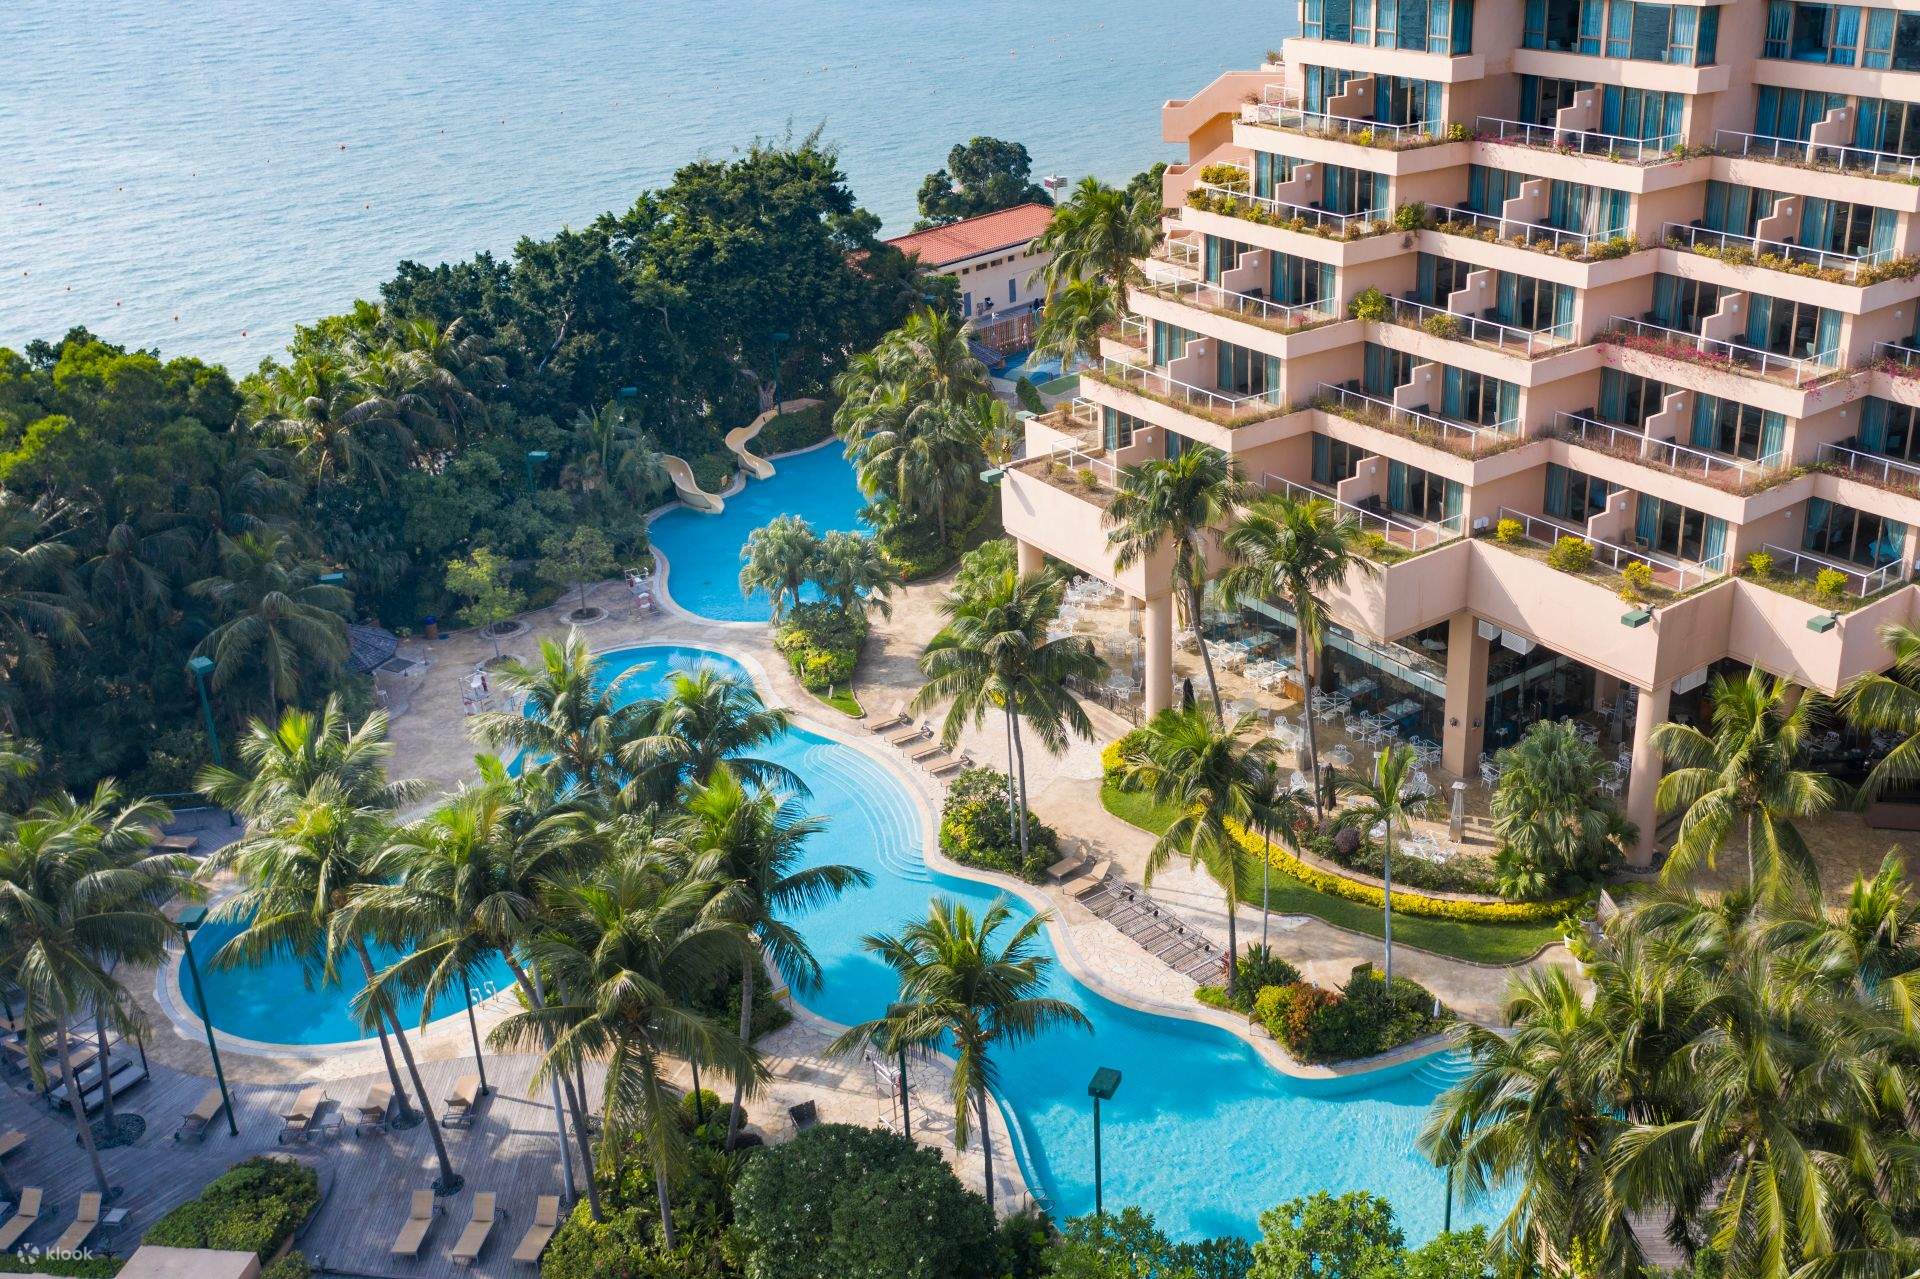 afsked hjælpeløshed sympati Gold Coast Hotel Staycation, Tuen Mun Hong Kong - Klook United States